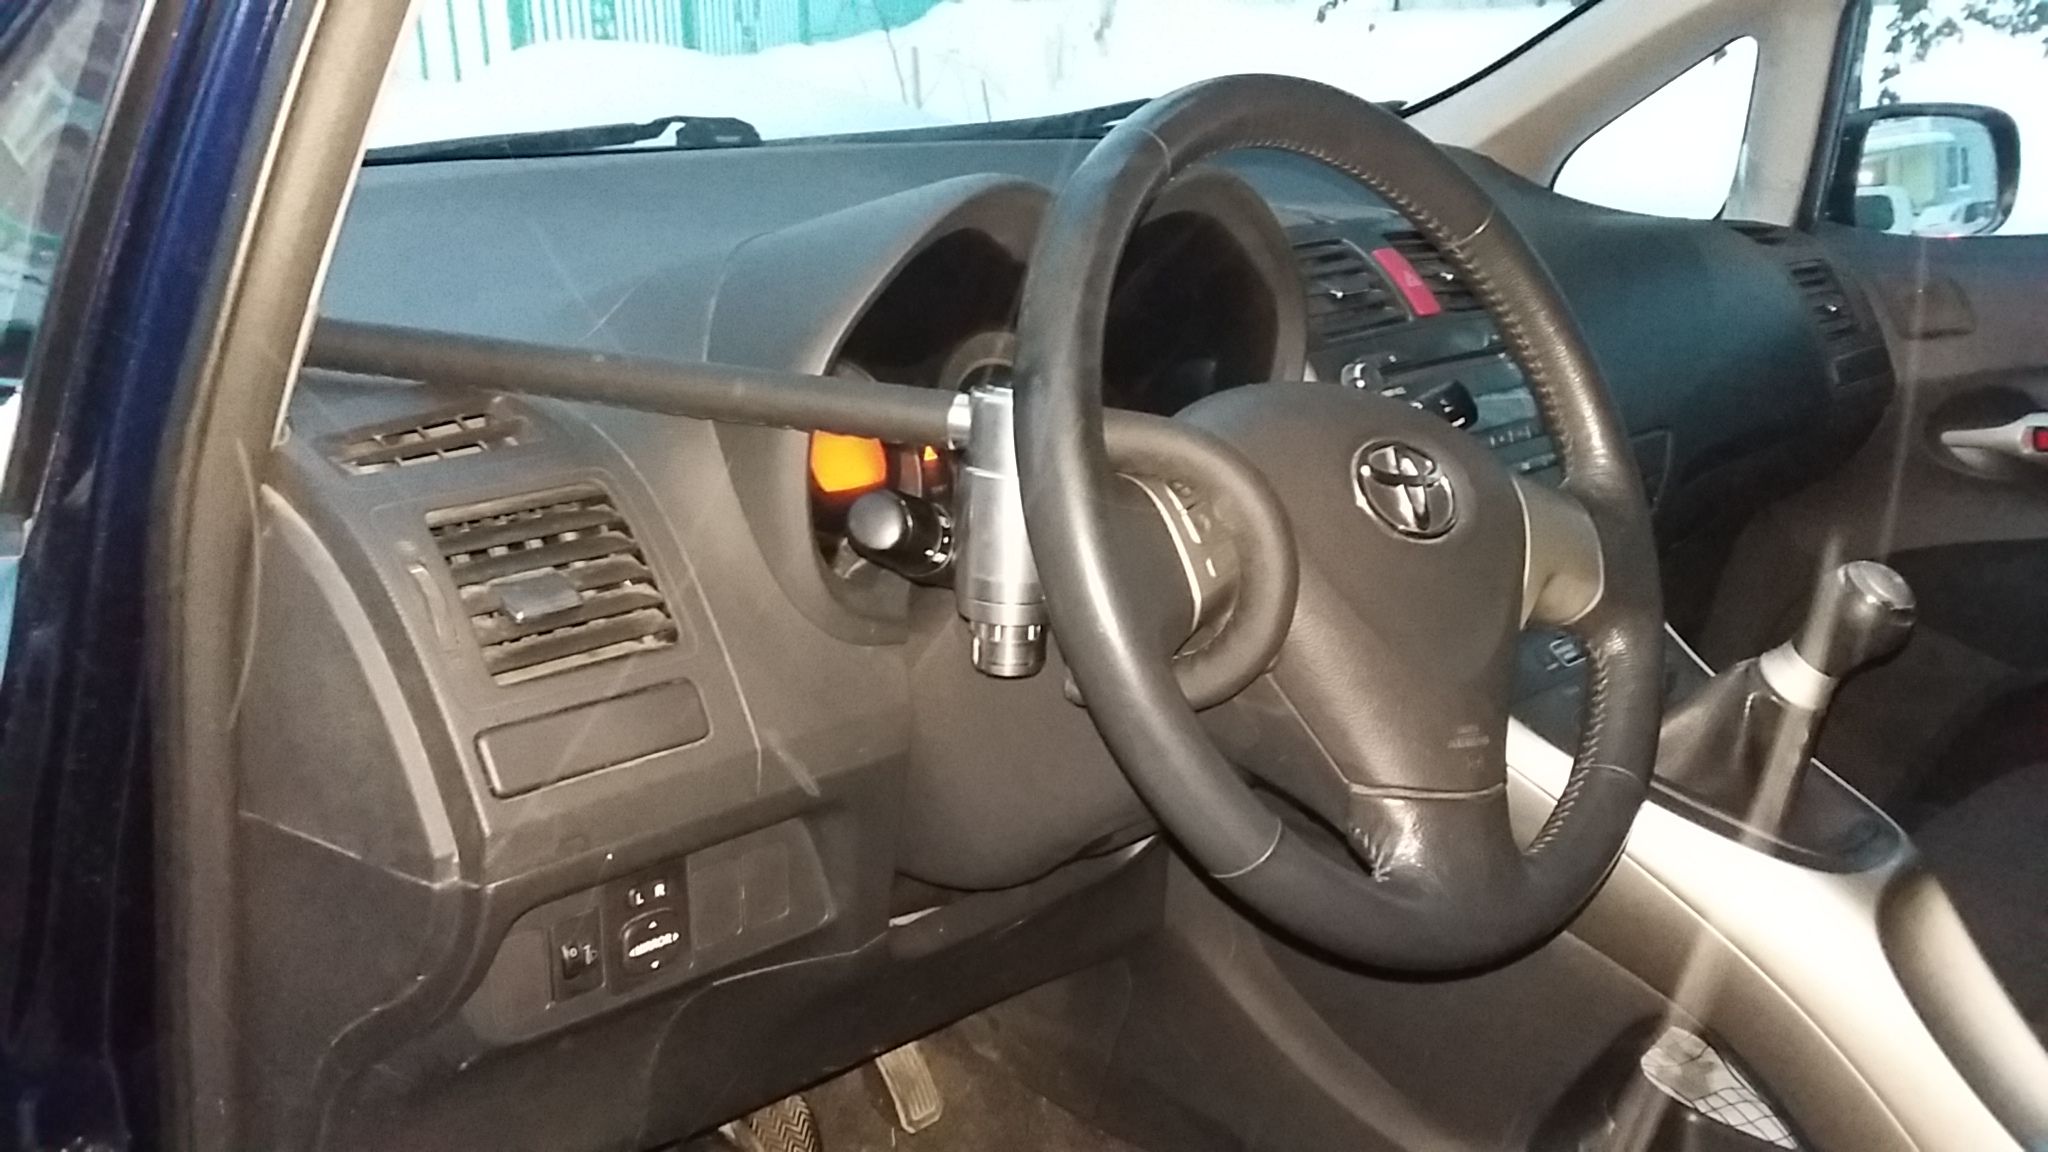 Блокиратор руля Питон установленный на автомобиле Toyota Auris 2006-2012